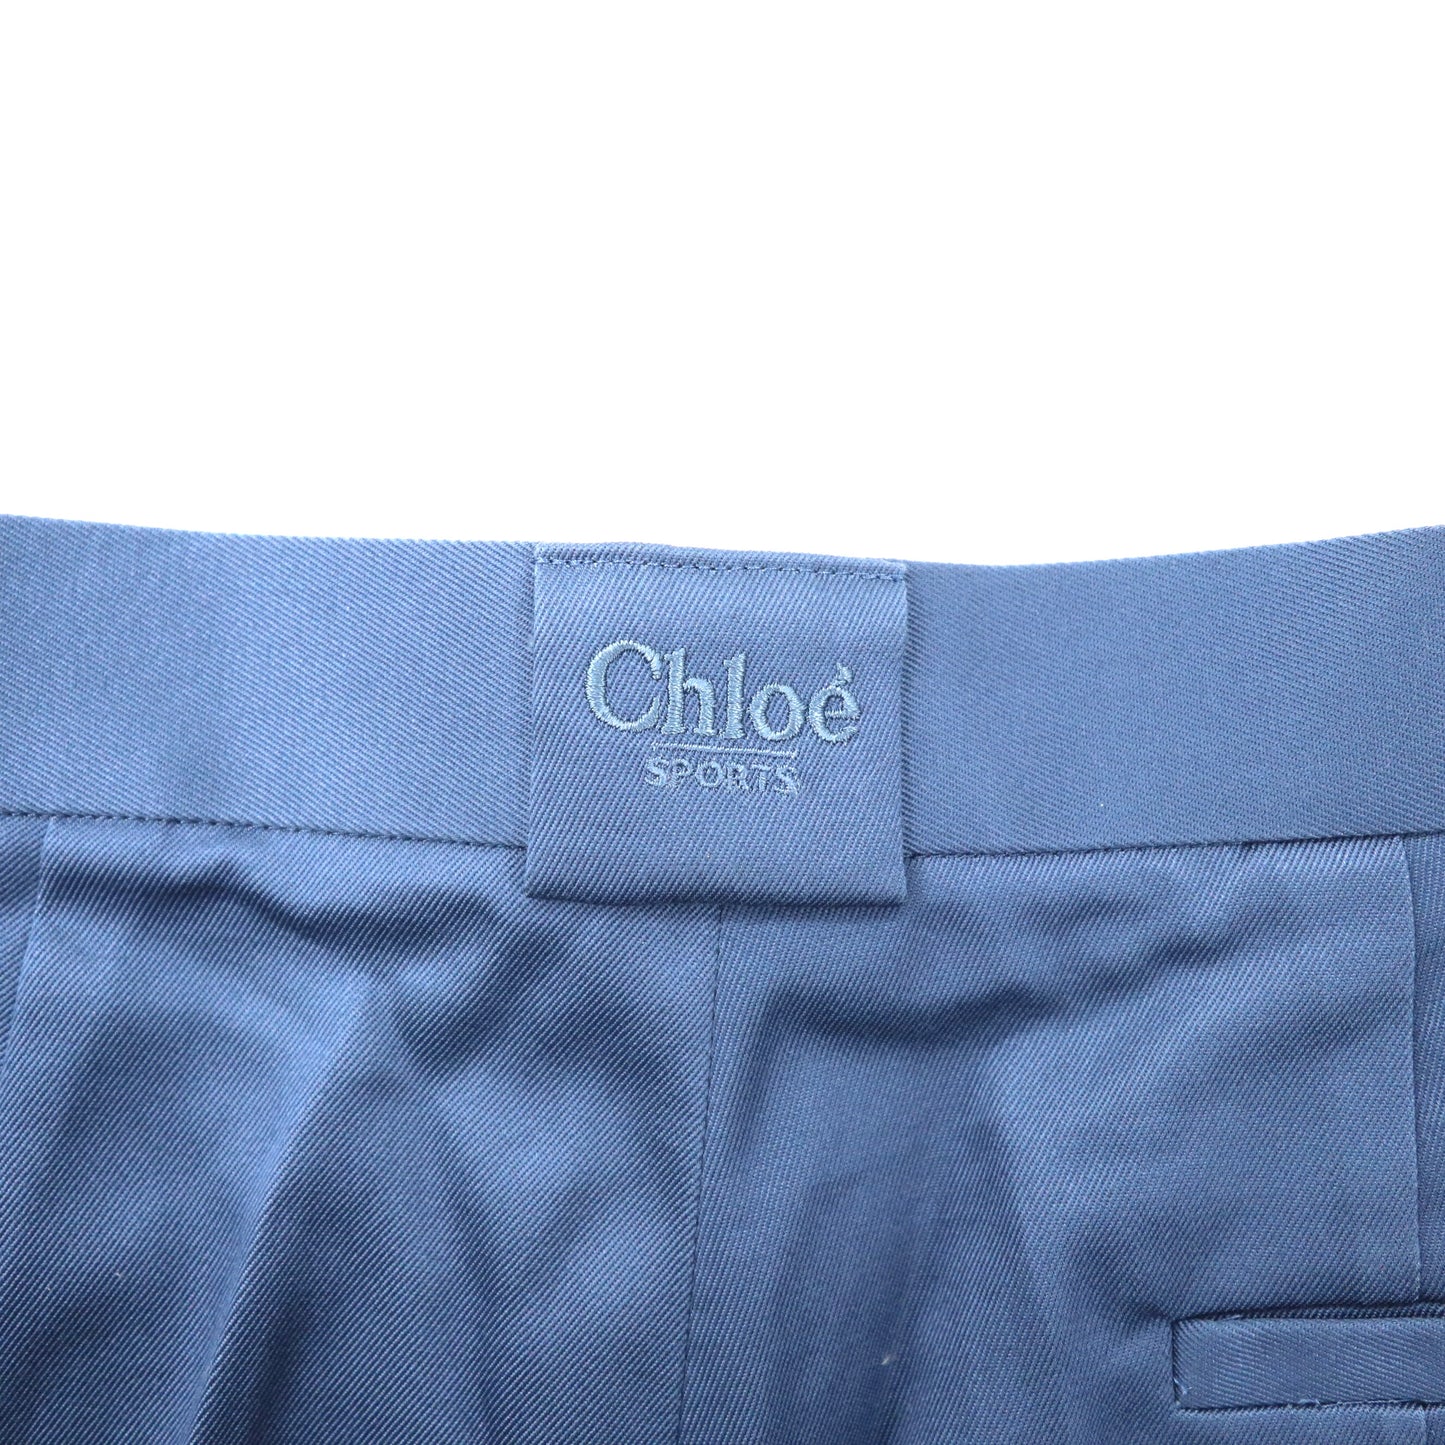 Chloe SPORTS 2タック イージースラックスパンツ L ブルー コットン CHL8256 80年代 日本製 未使用品